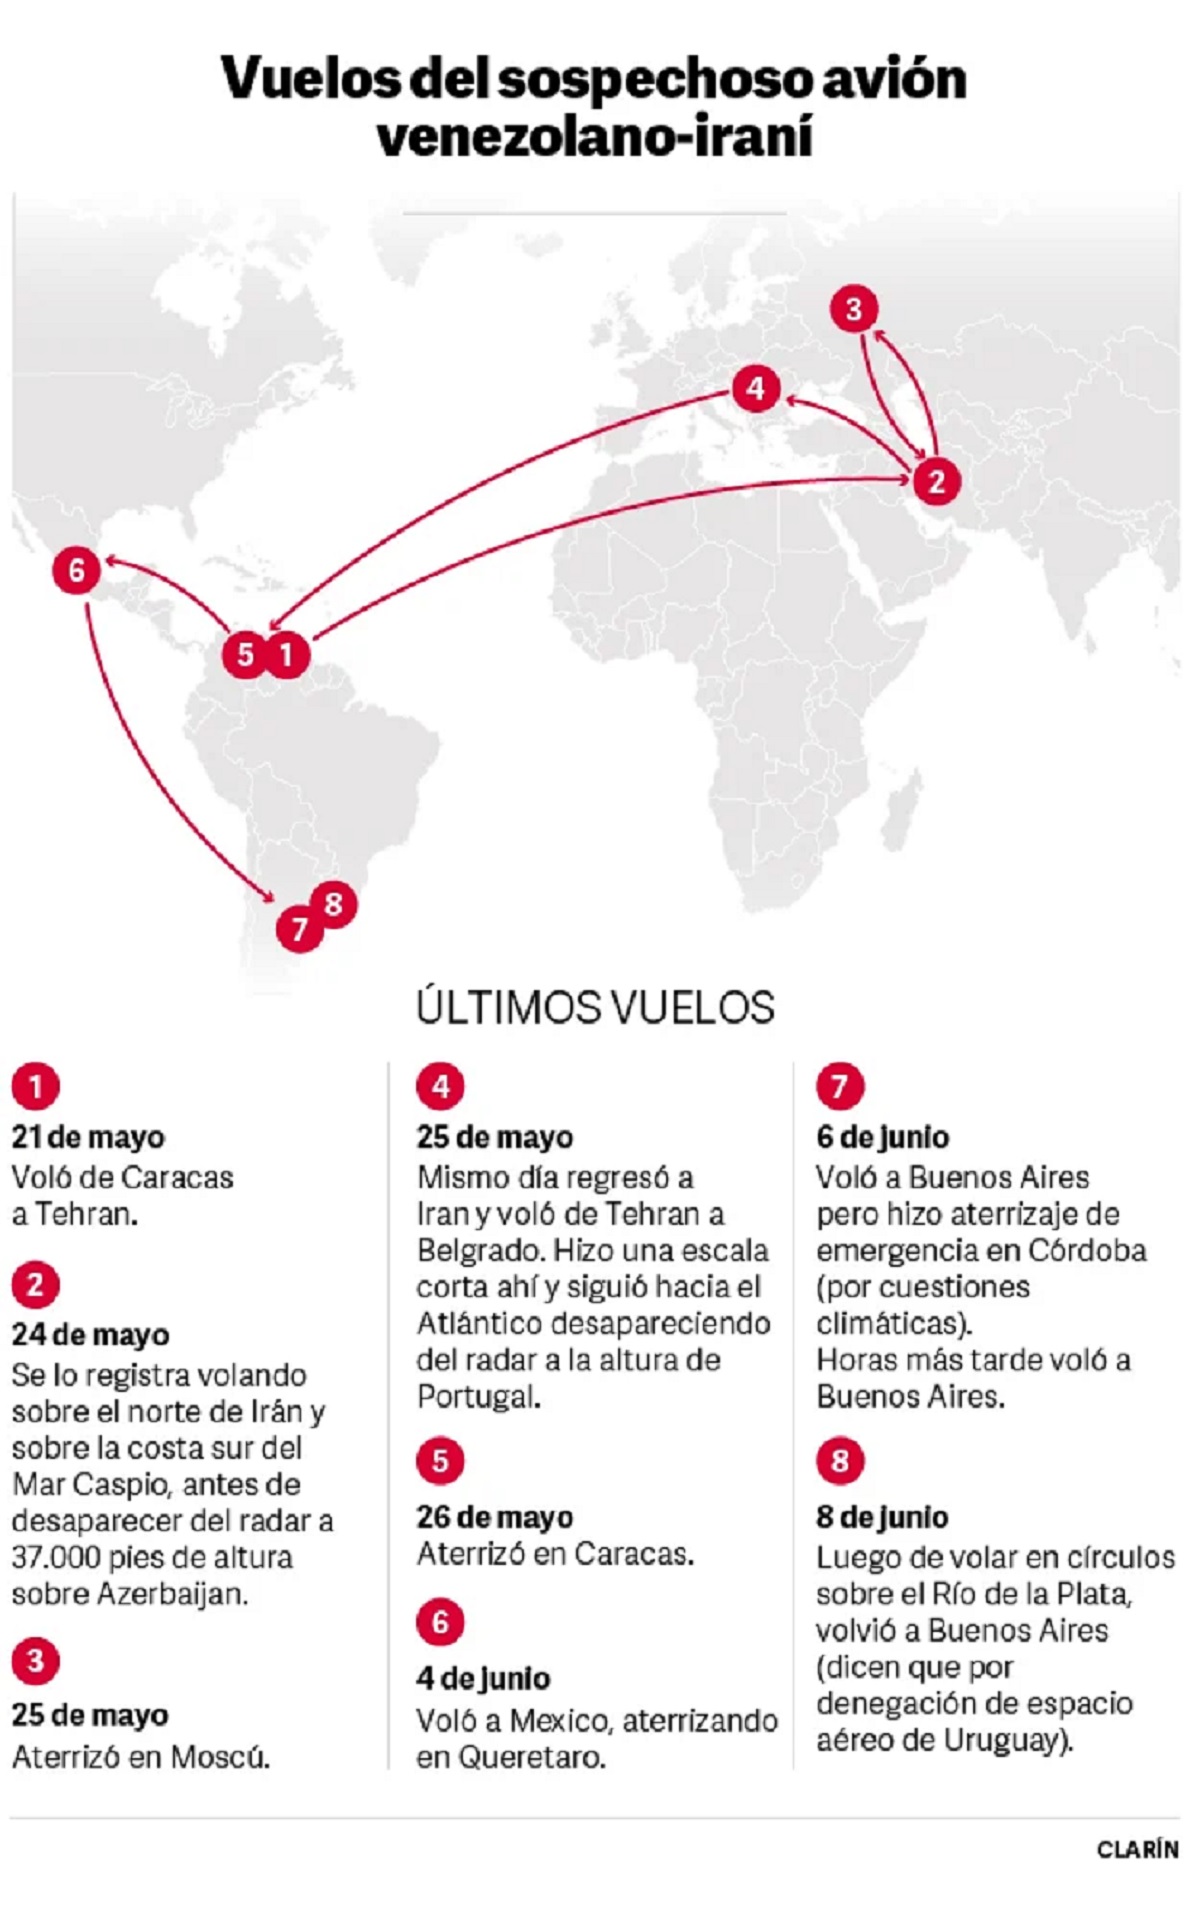 Clarín: Continúa investigación argentina sobre avión de carga venezolano con tripulantes iraníes